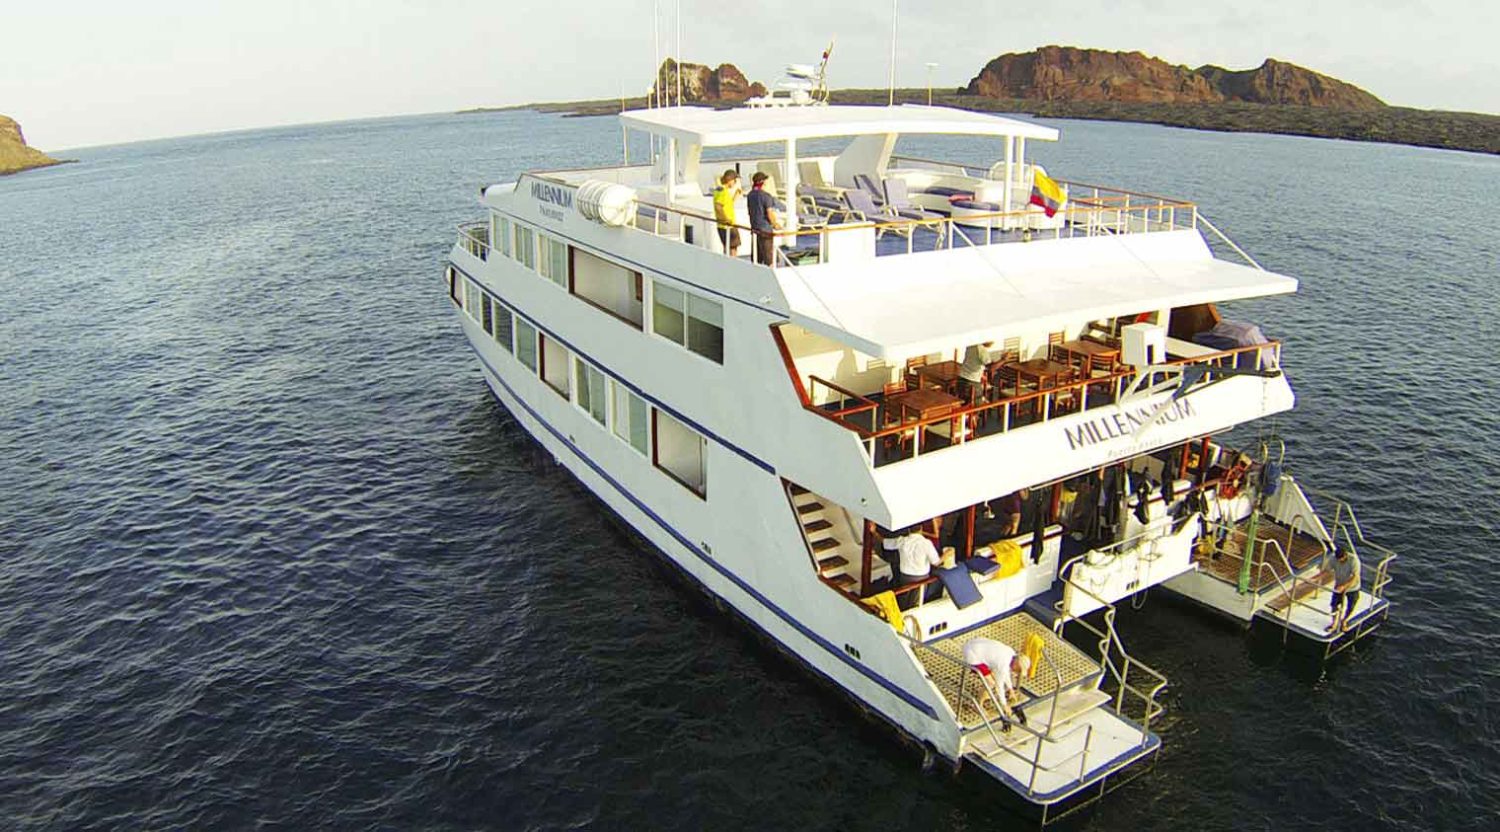 millenium catamaran yacht back photo of galapagos islands tours